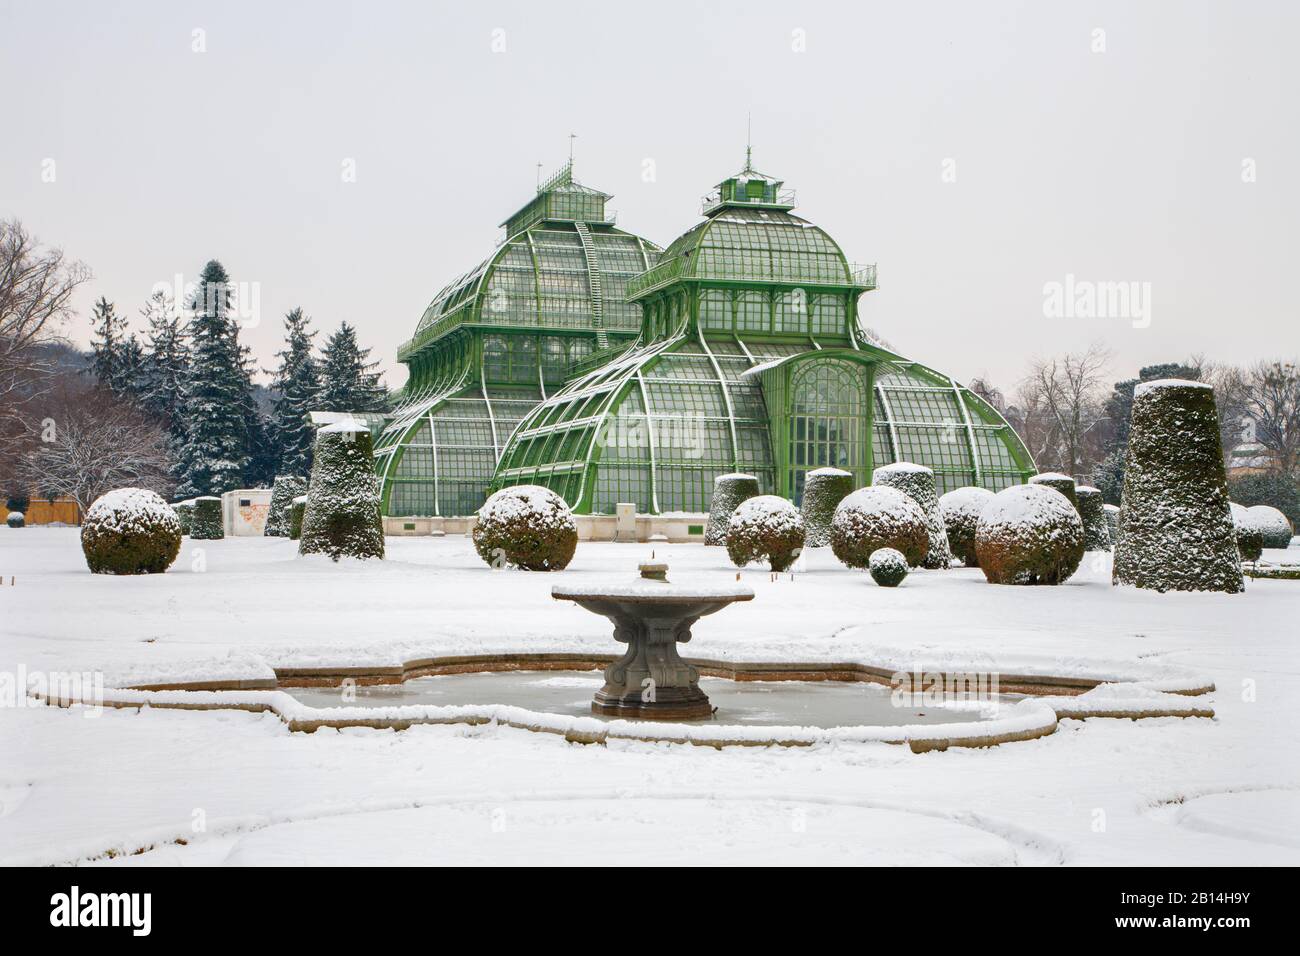 Vienna, AUSTRIA - 15 GENNAIO 2013: Le Serre del palazzo di Schonbrunn in inverno. Le serre sono state aperte nel 1882. Foto Stock